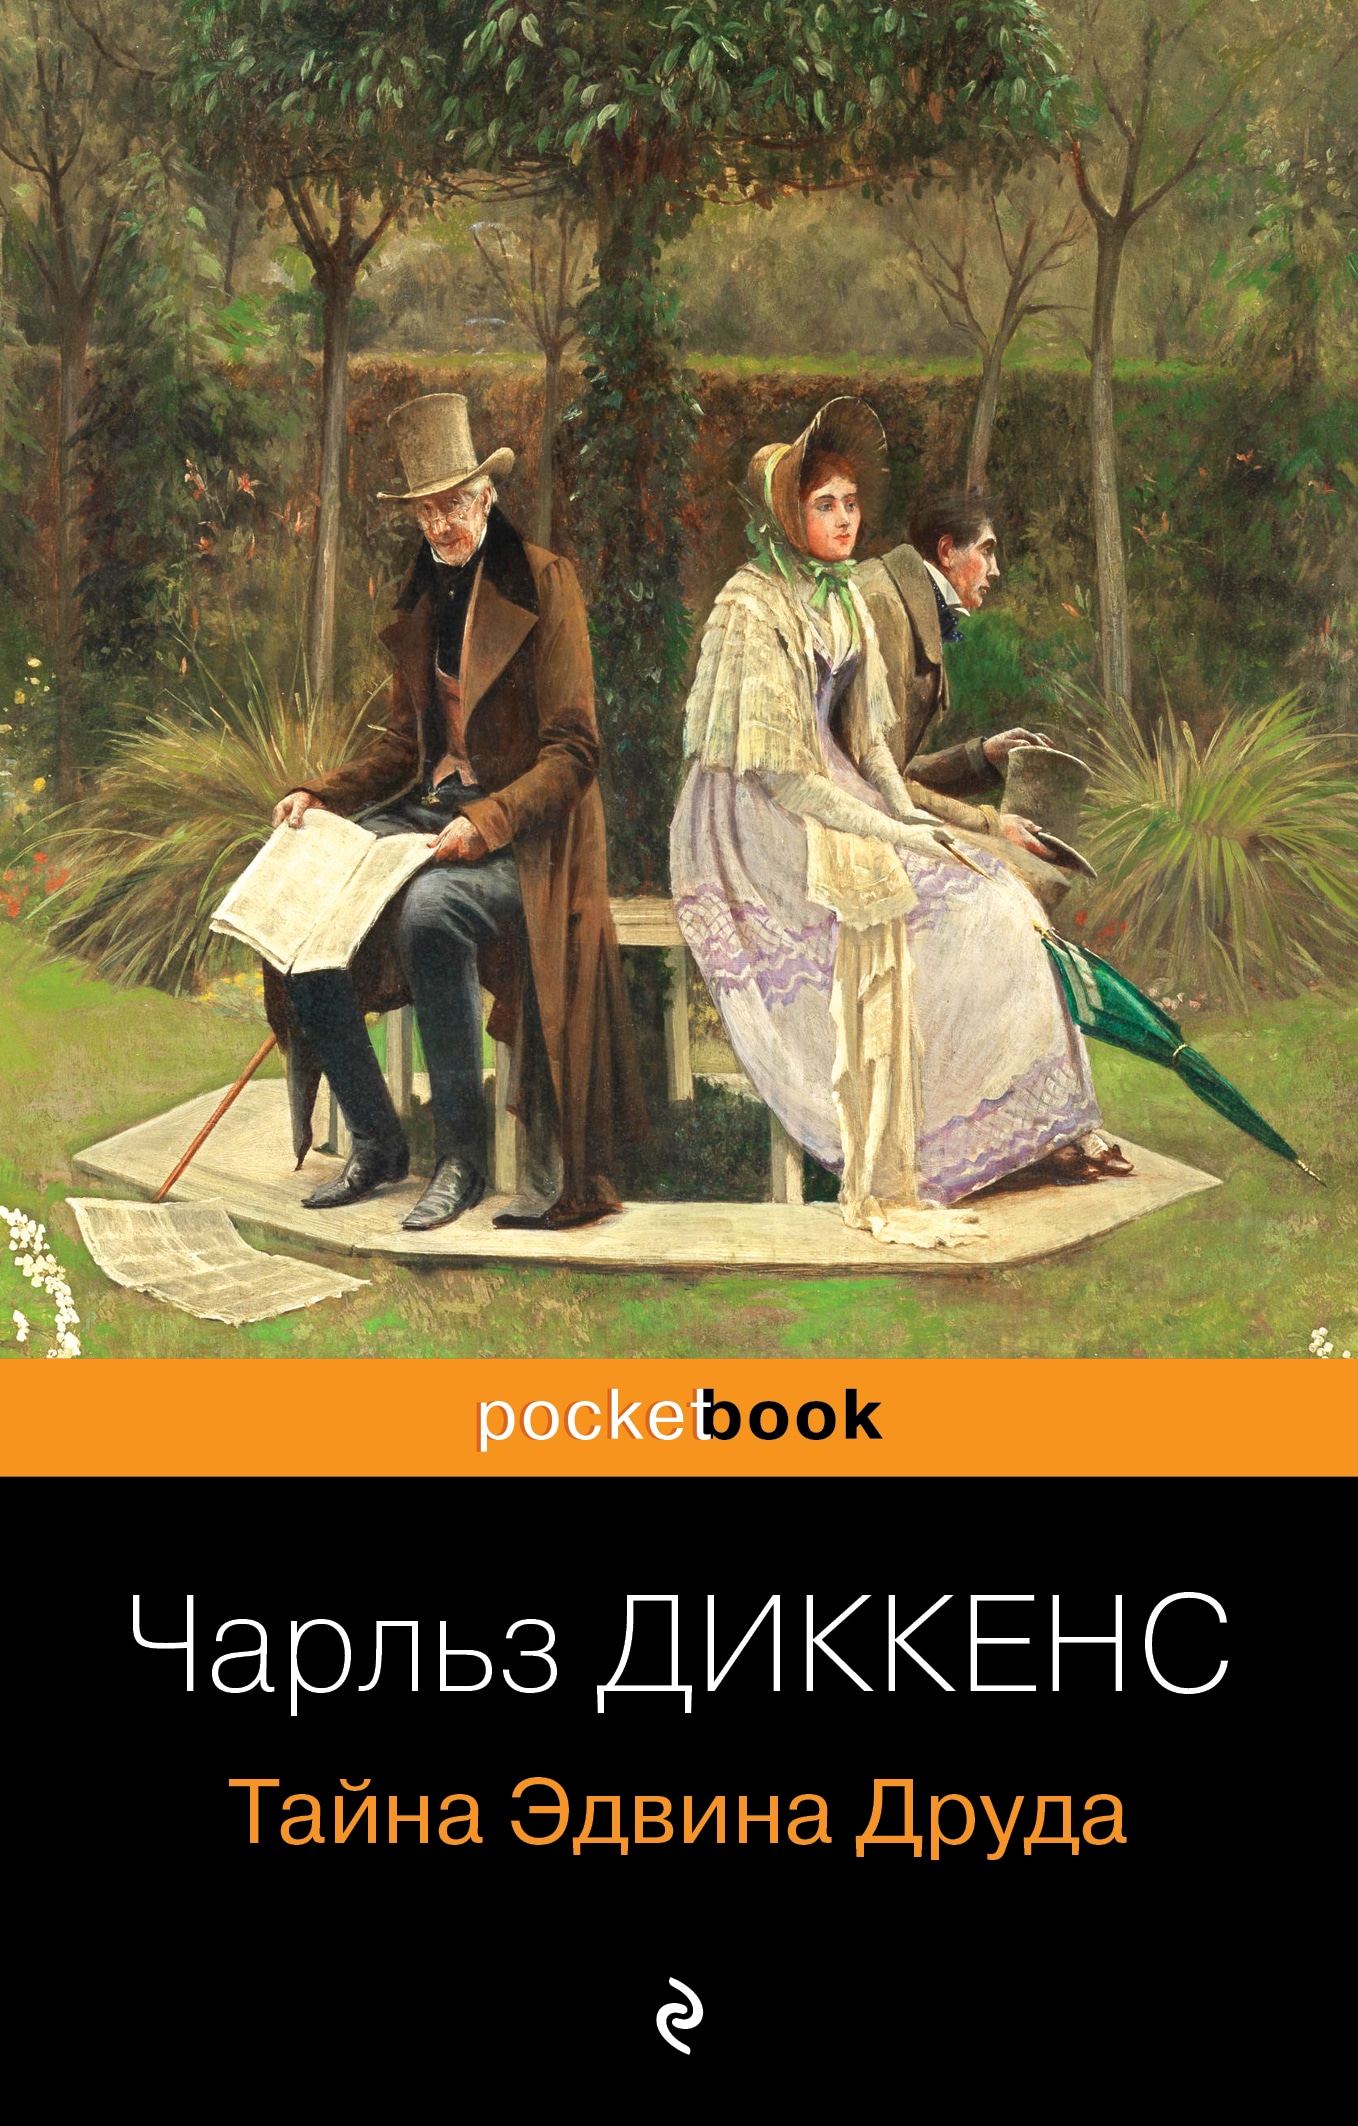 Book “Тайна Эдвина Друда” by Чарльз Диккенс — 2023